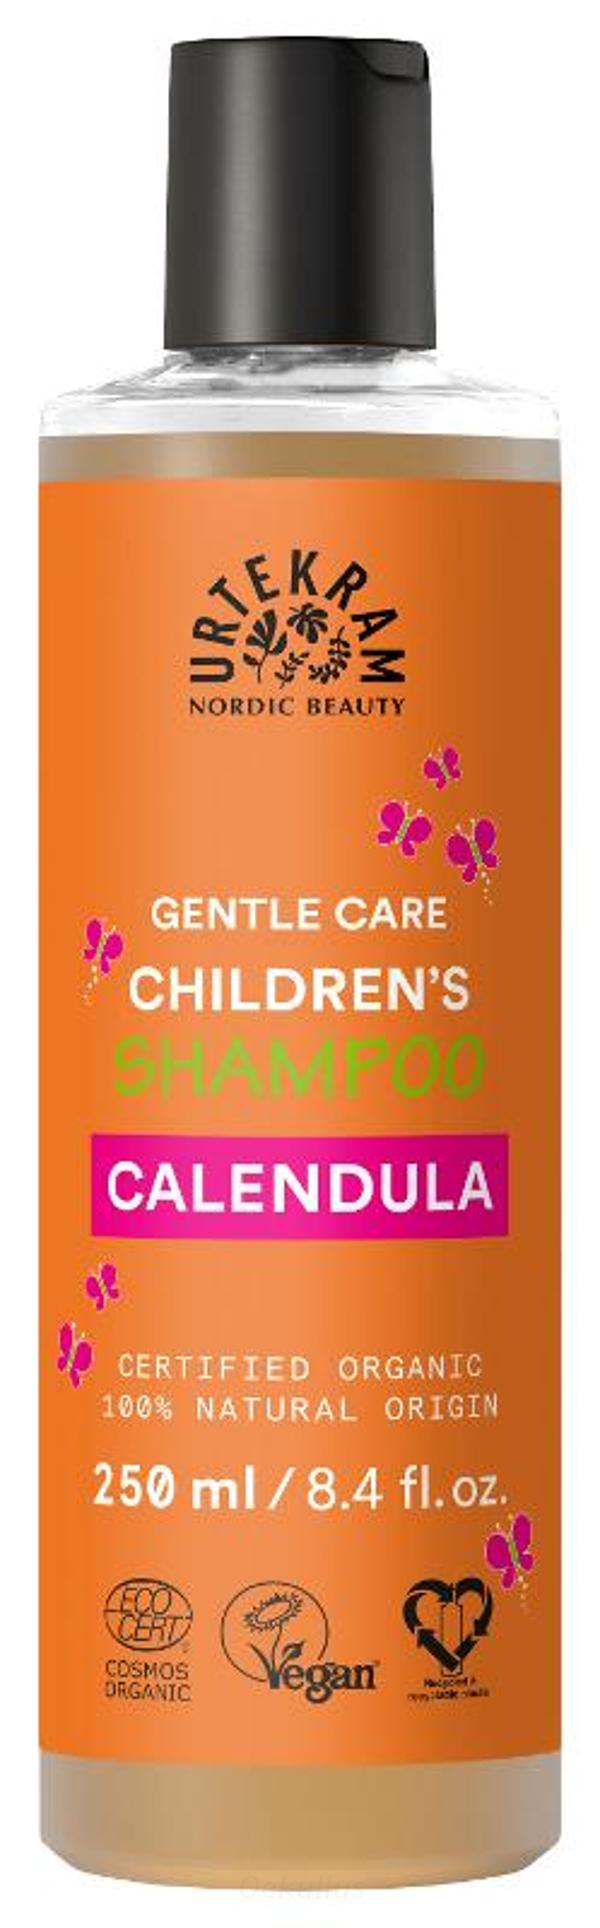 Produktfoto zu Kindershampoo Calendula